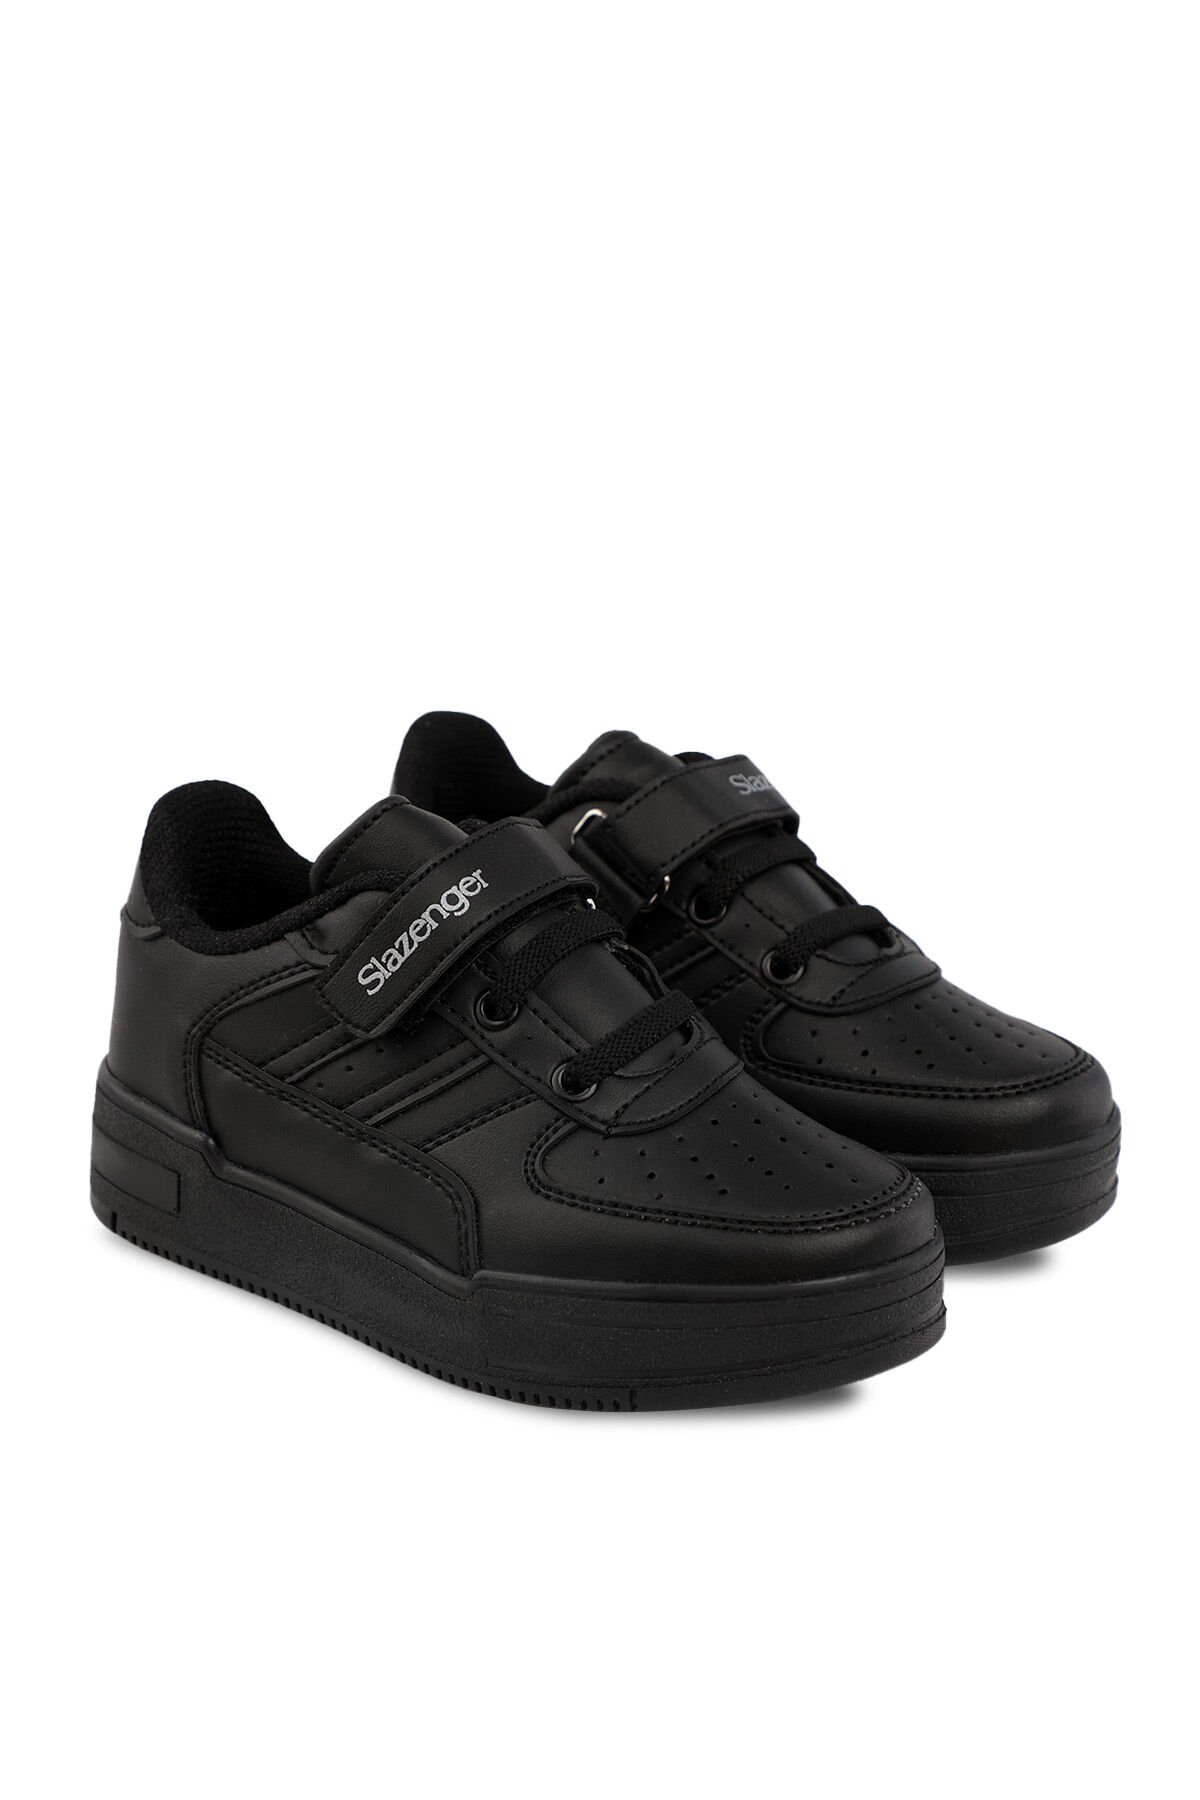 Slazenger CAMP Sneaker Unisex Çocuk Ayakkabı Siyah / Siyah - Thumbnail